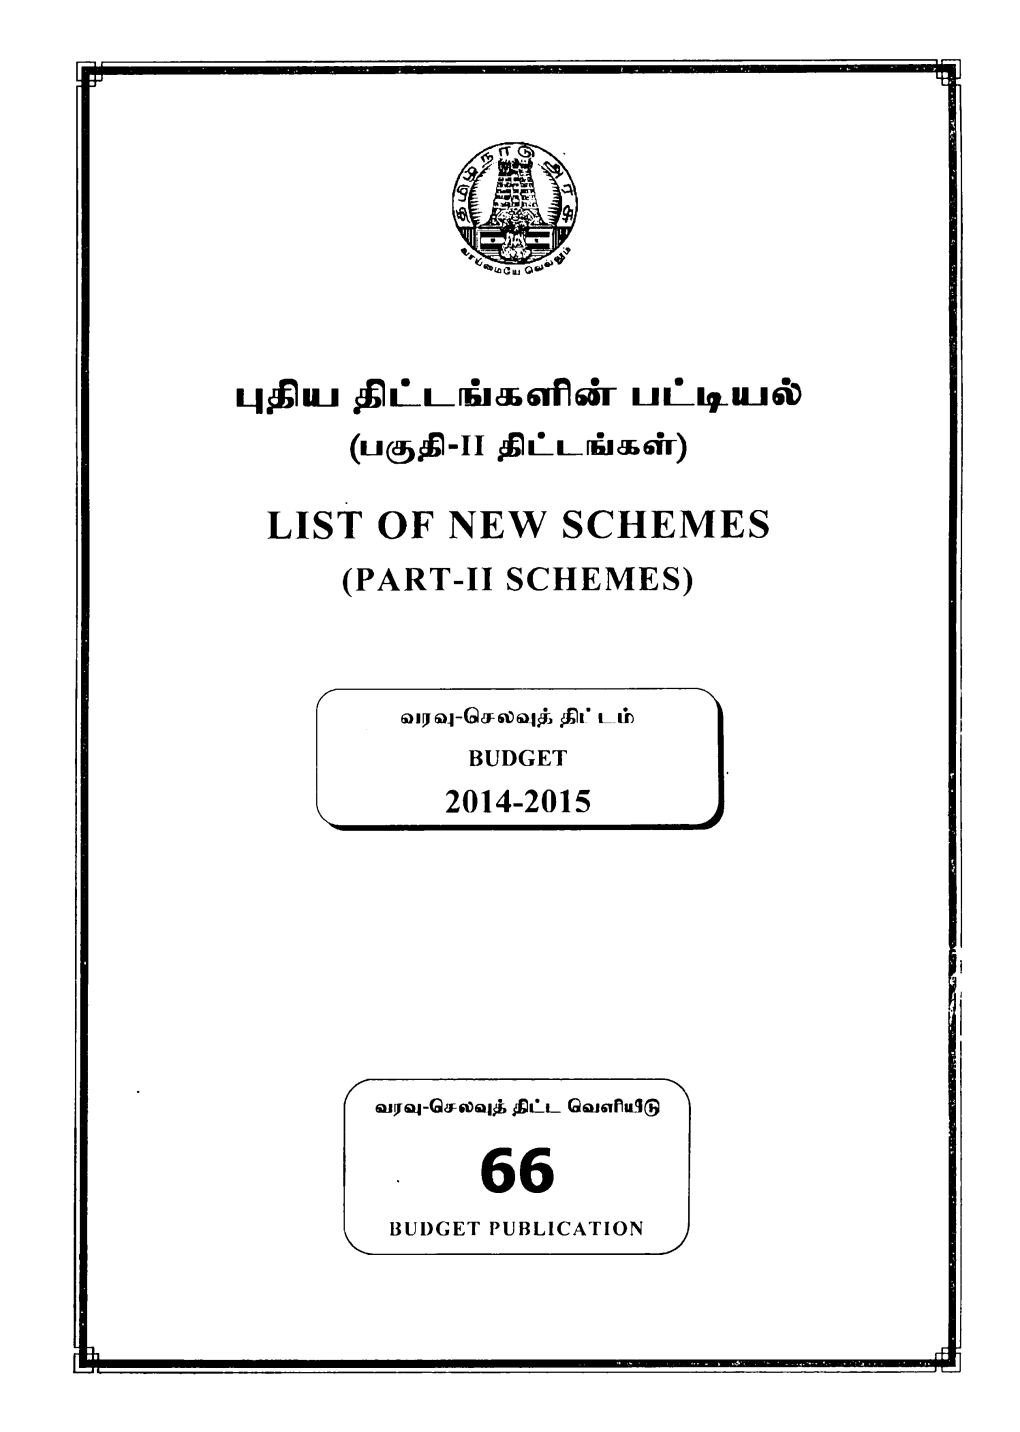 List of New Schemes (Part-Ii Schemes)